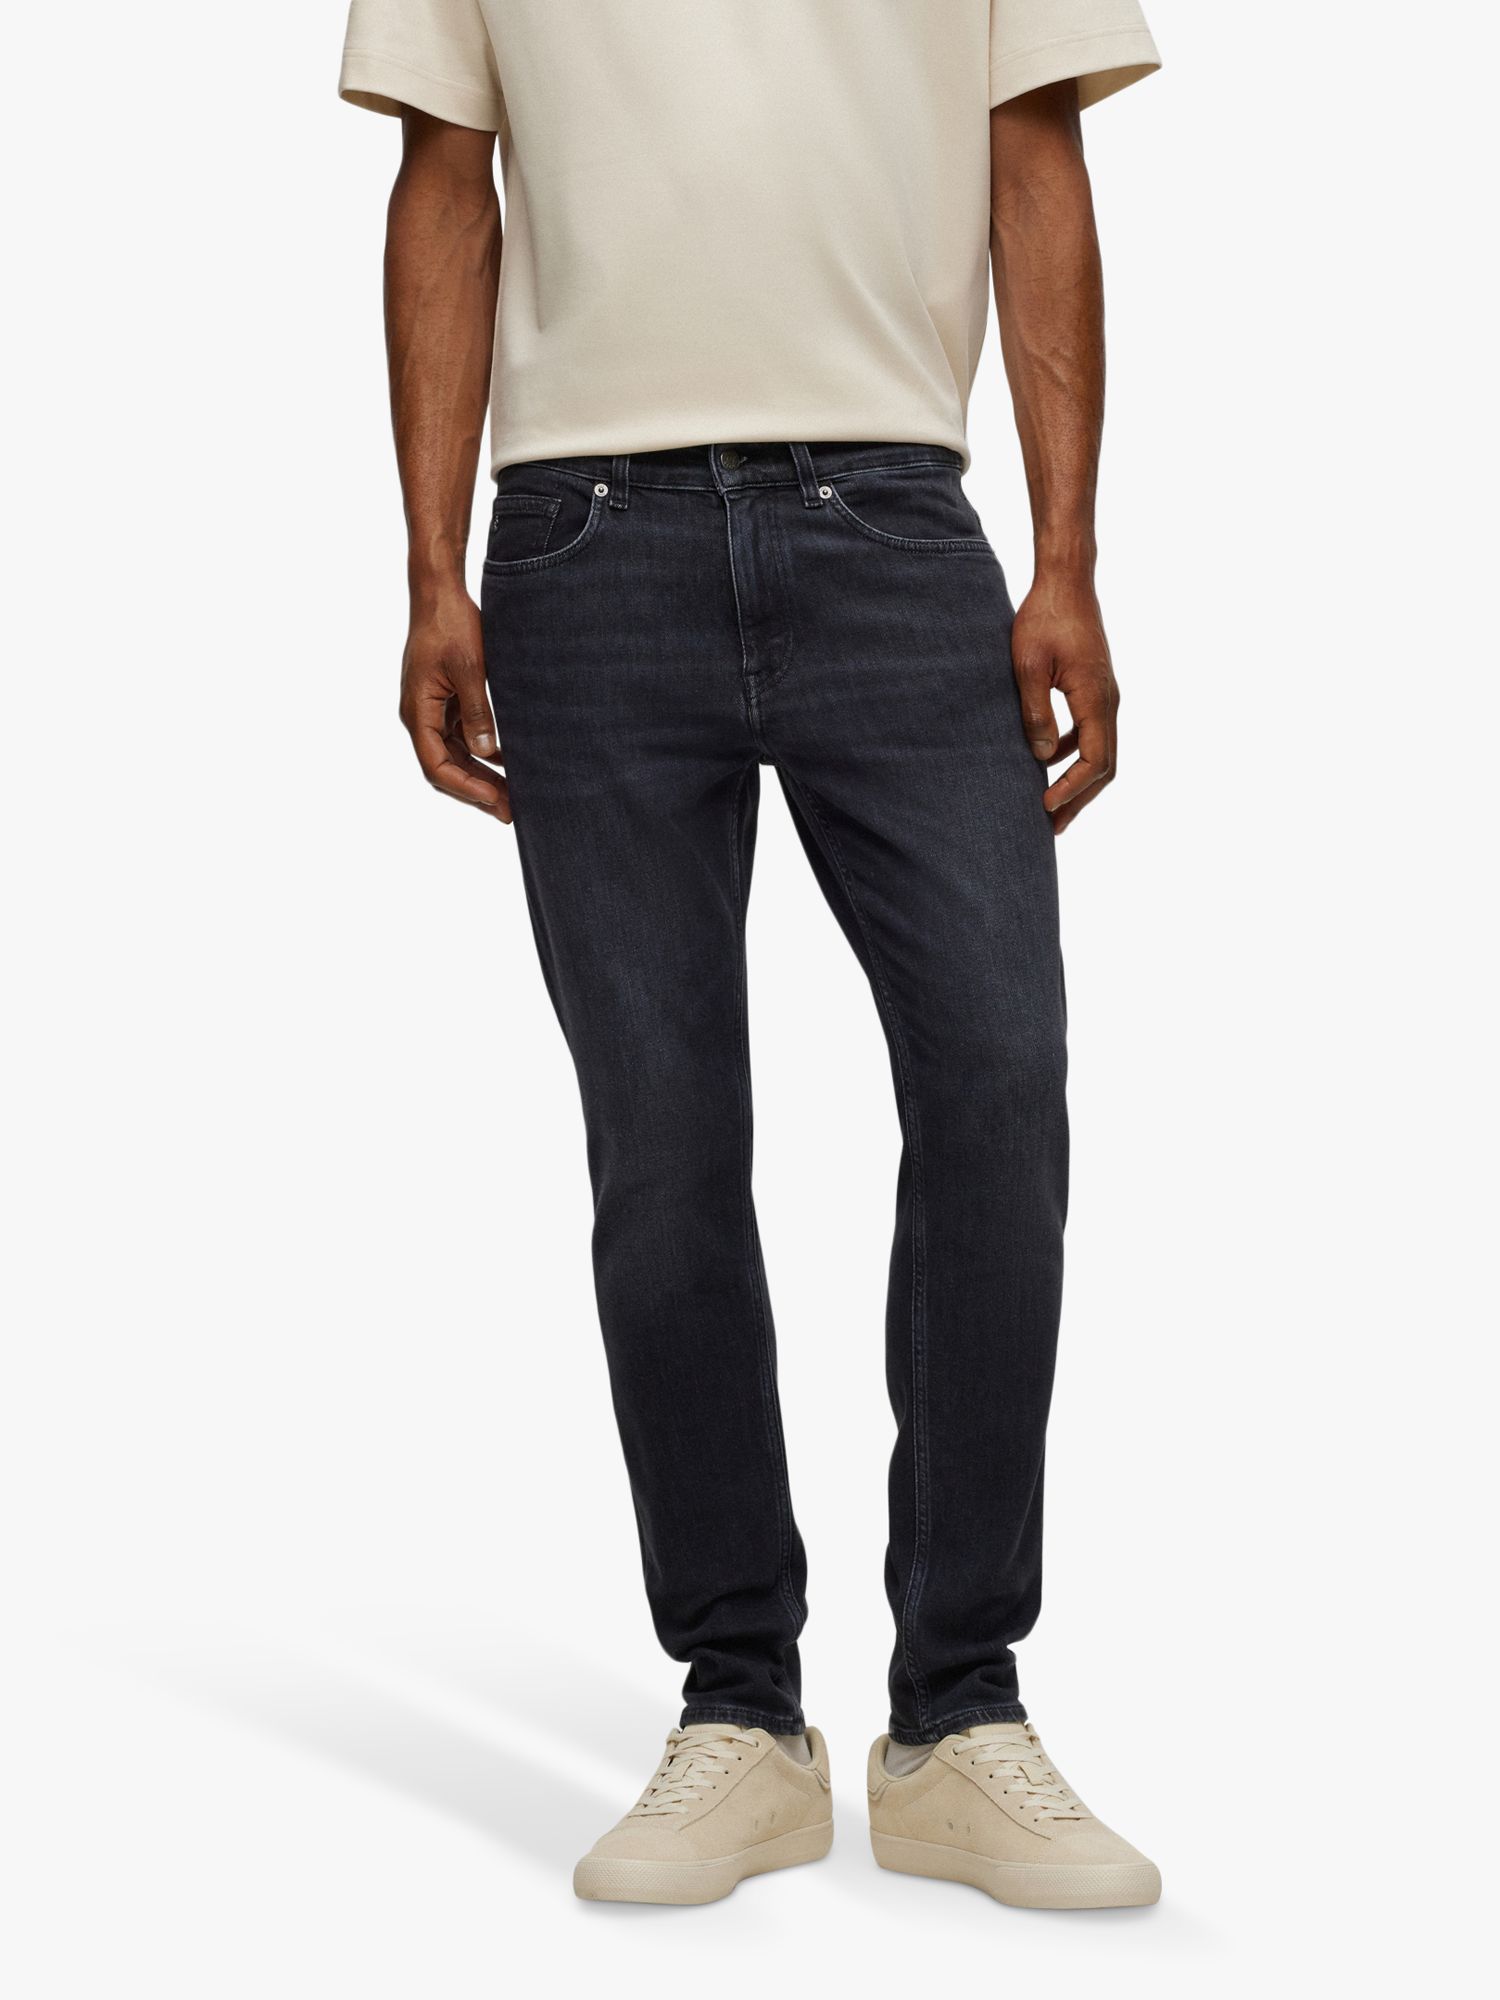 BOSS Delano Slim Fit Jeans, Grey at John Lewis & Partners